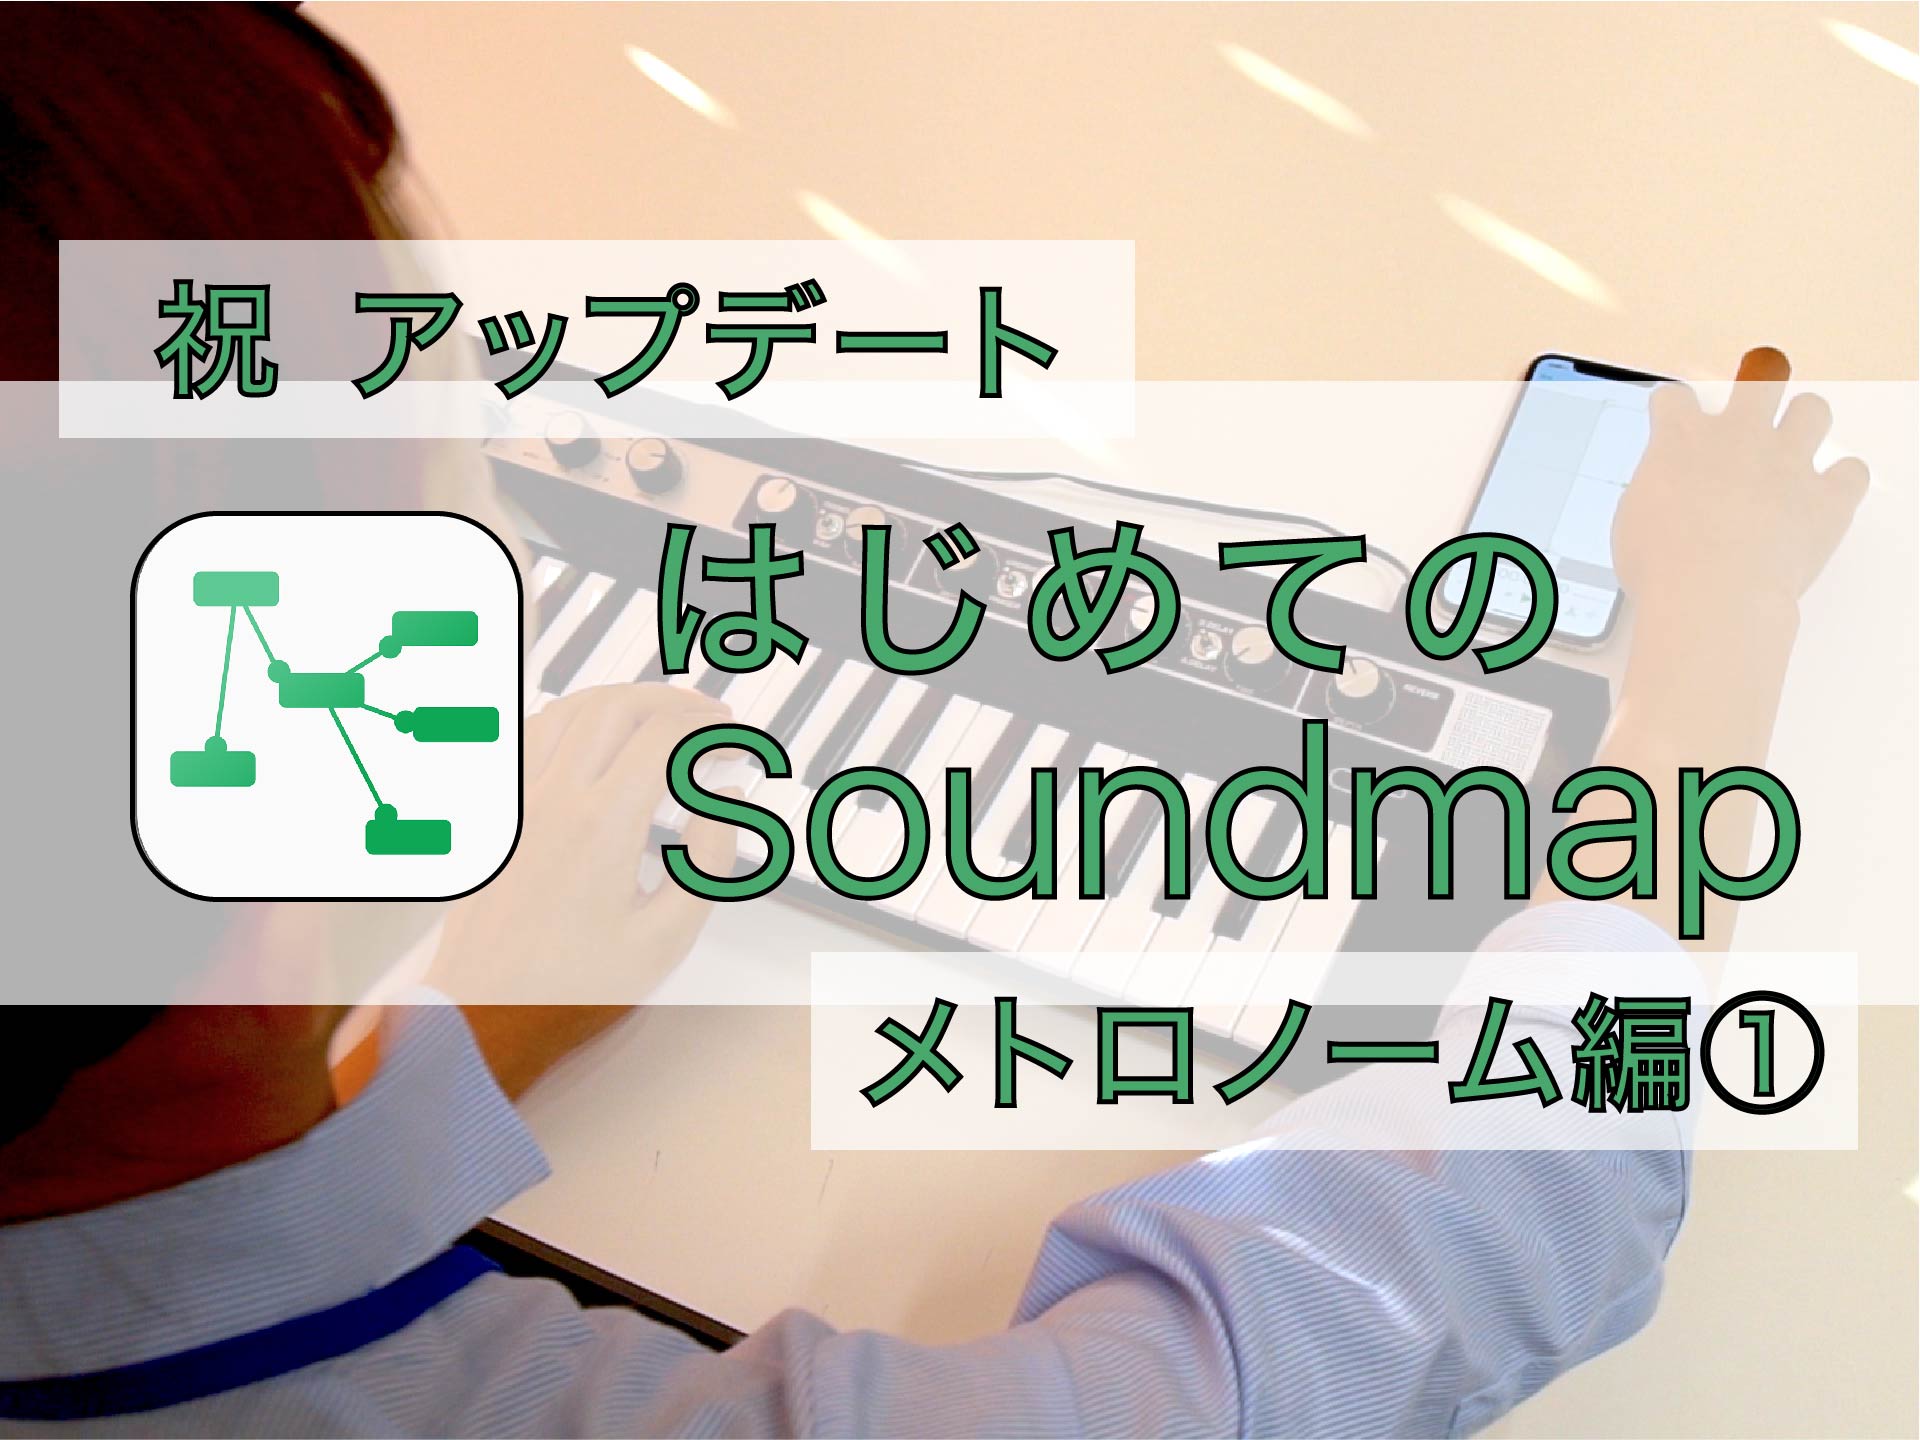 Soundmap_サムネ_メトロノーム①-01